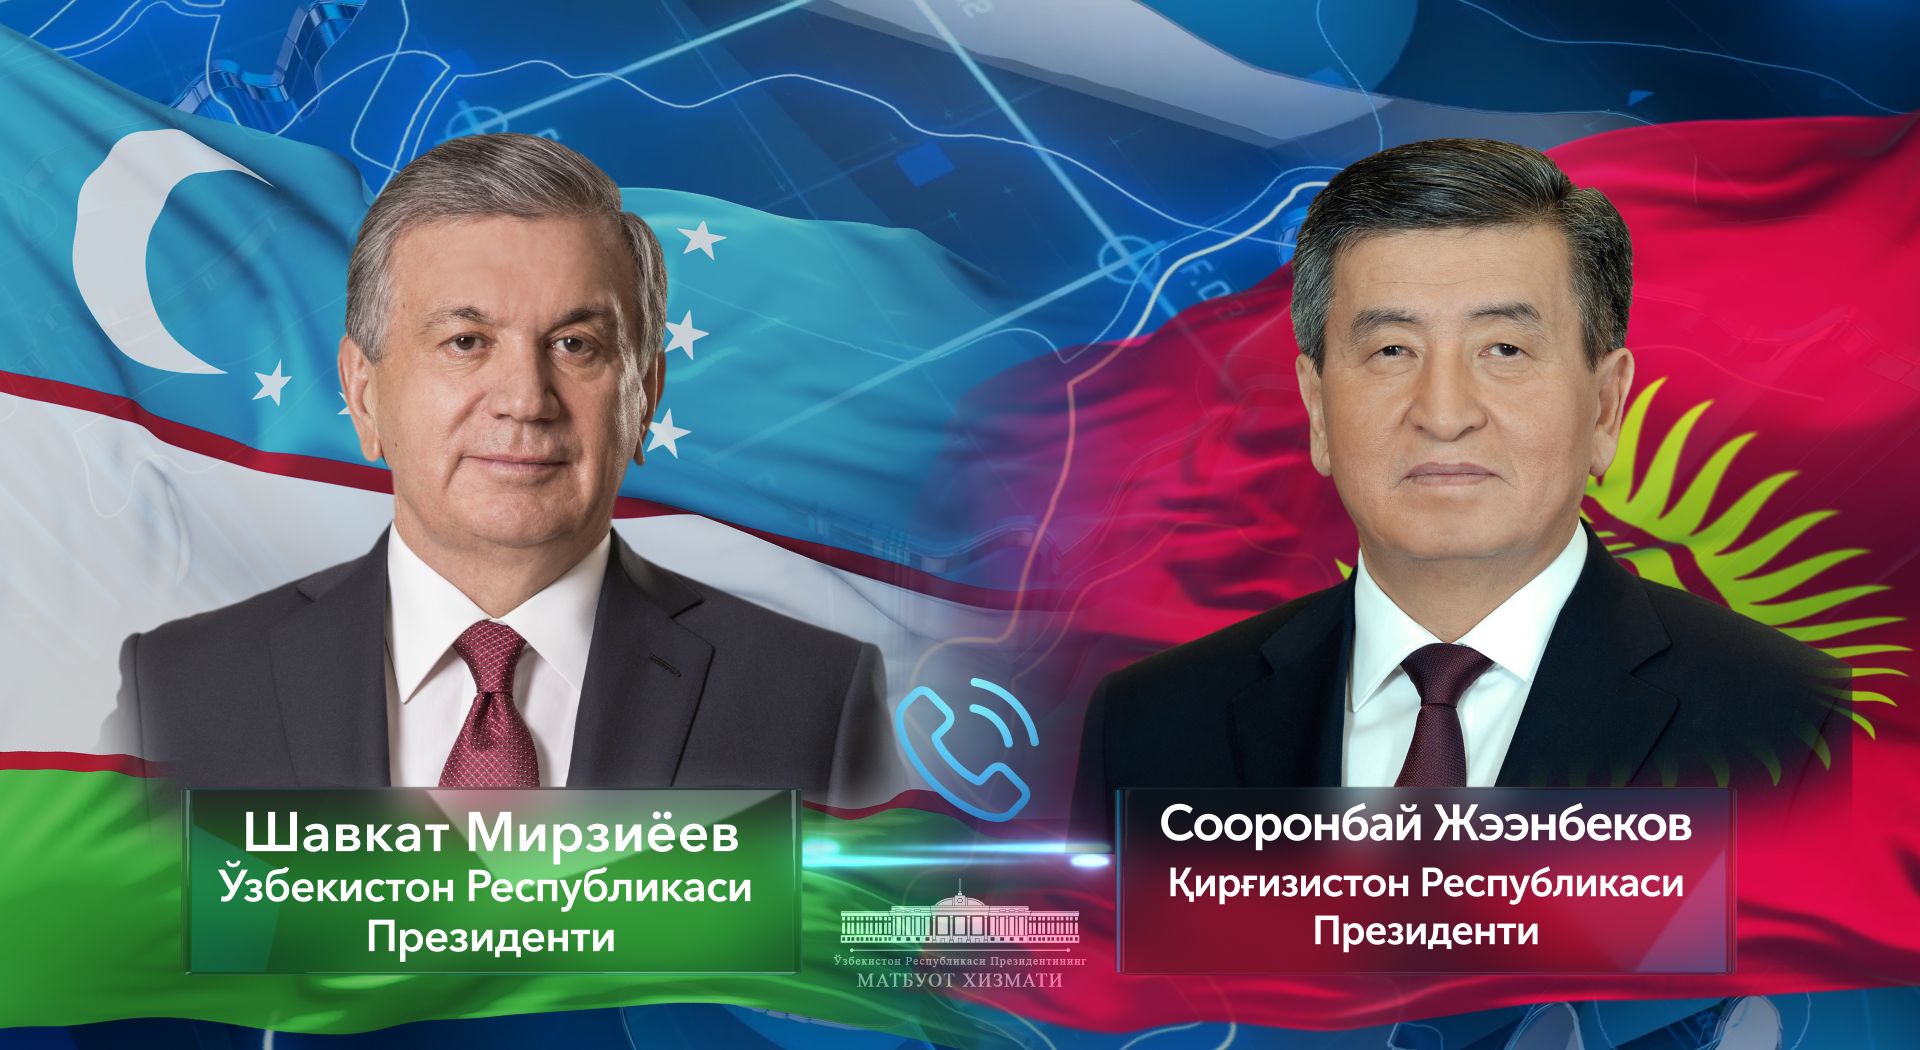 Qirg‘iziston Prezidenti Sooronbay Jeenbekov bilan telefon orqali muloqot bo‘lib o‘tdi